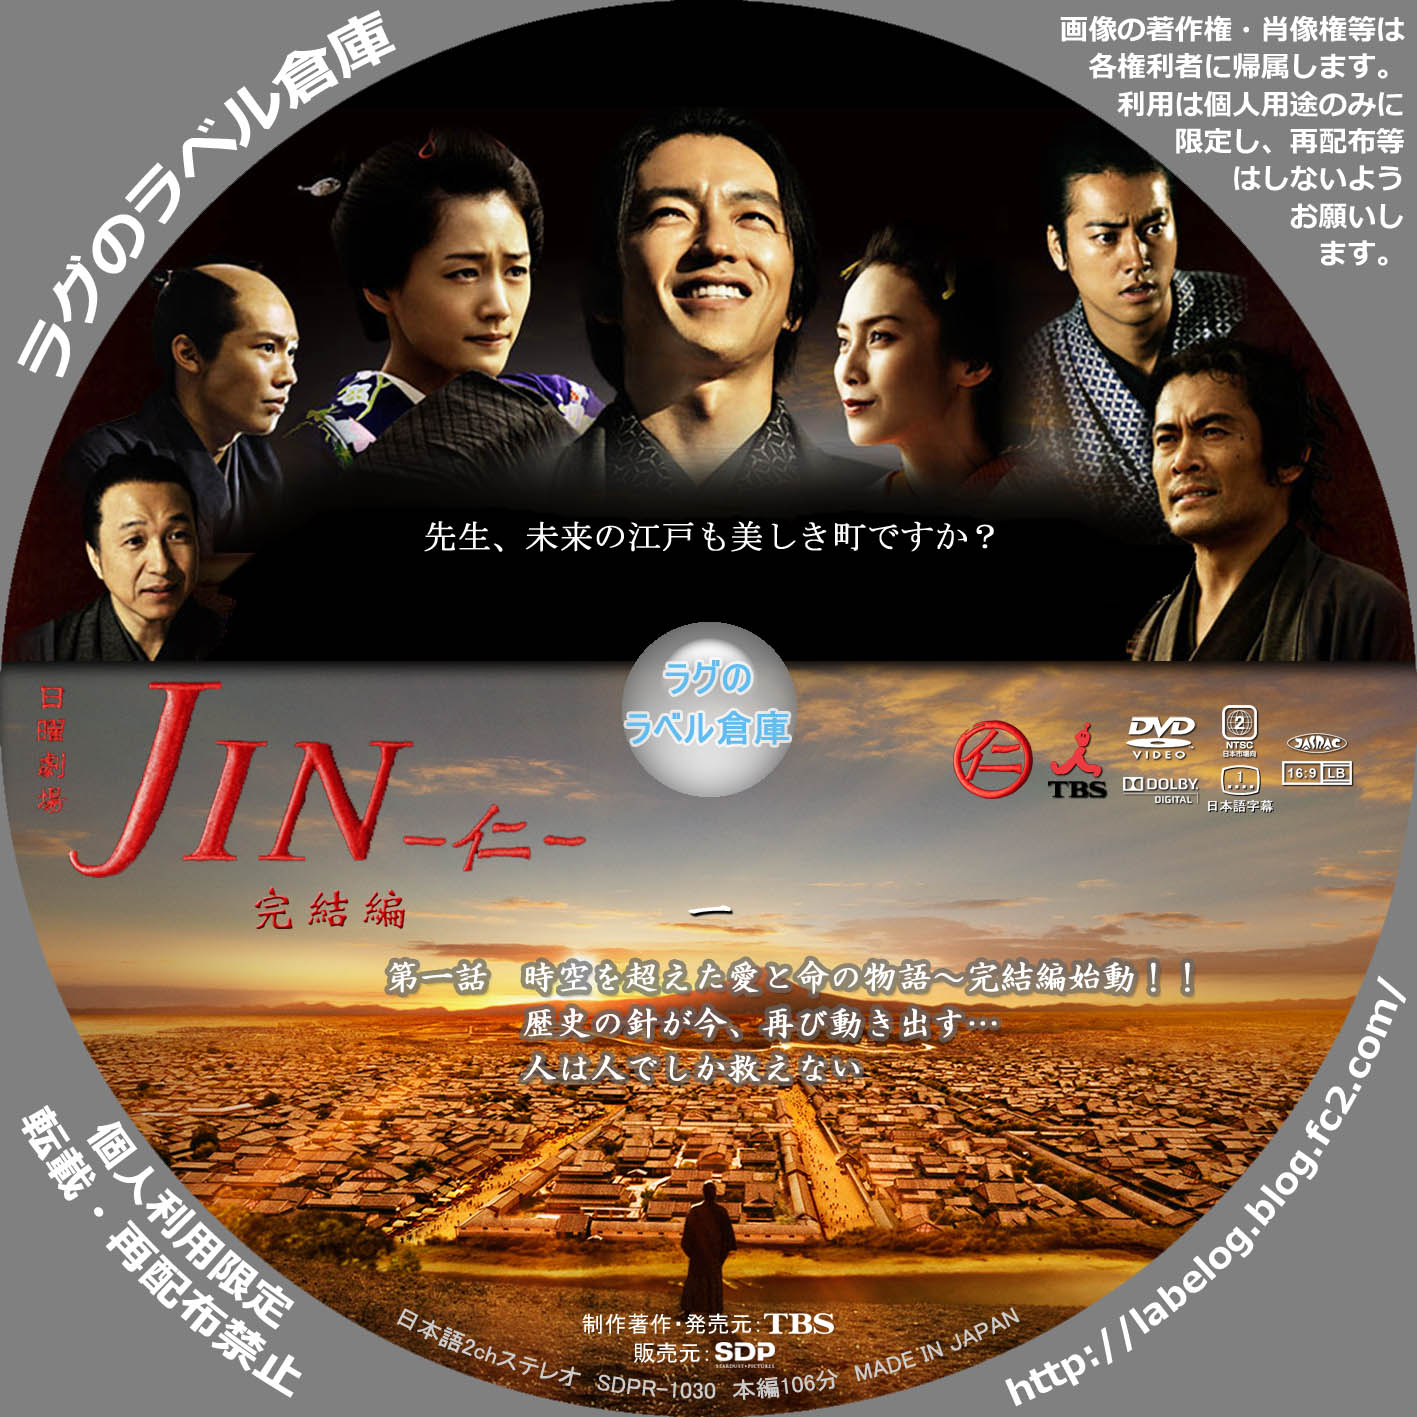 JIN -仁- | ラグの CD / DVD / BD 自作ラベル倉庫